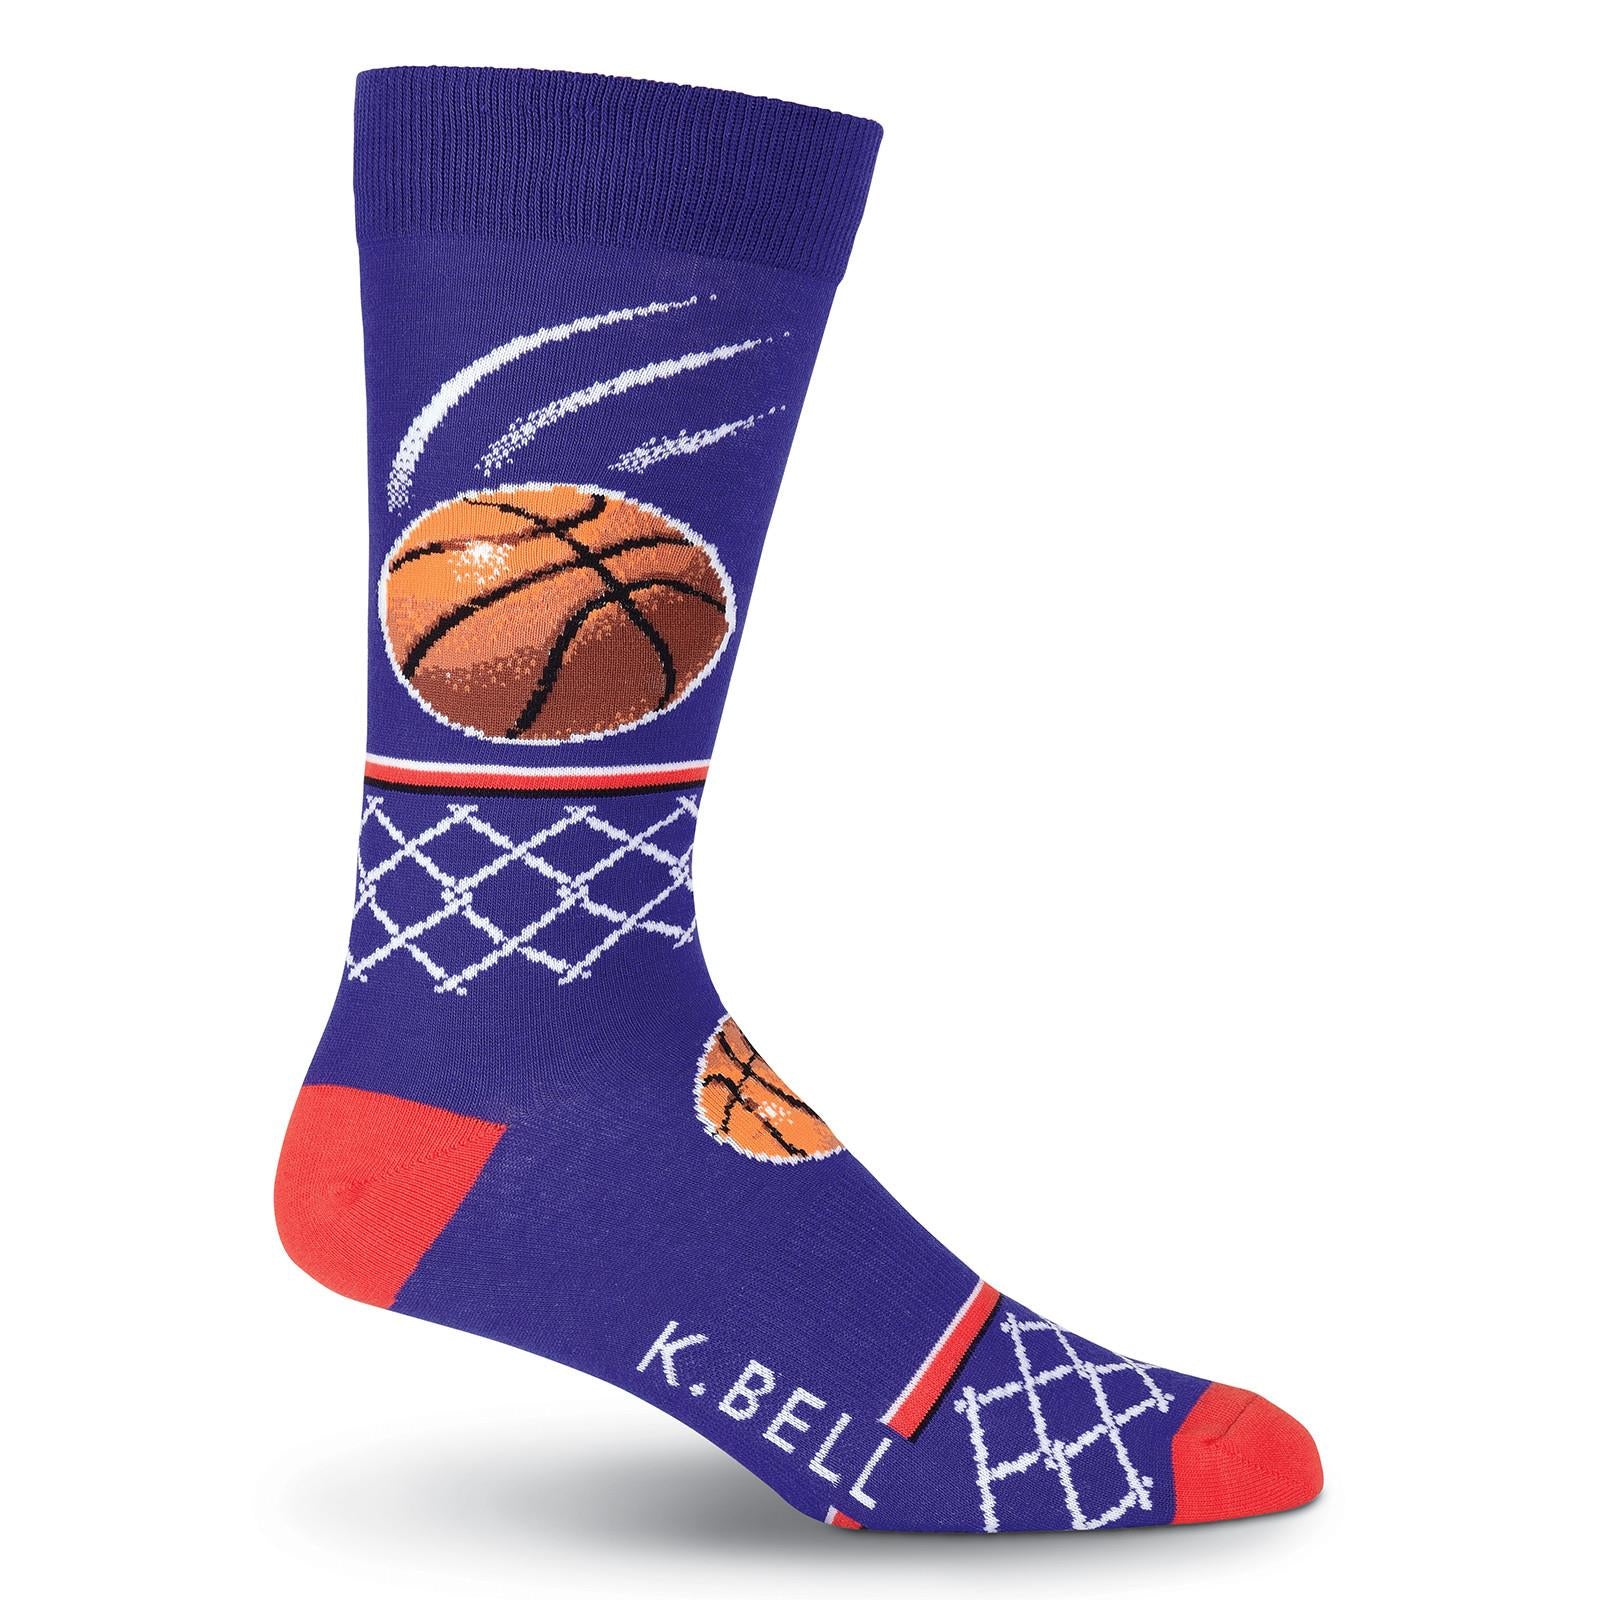 KBMS19H150-01 - K. Bell Mens Basketball Crew Socks